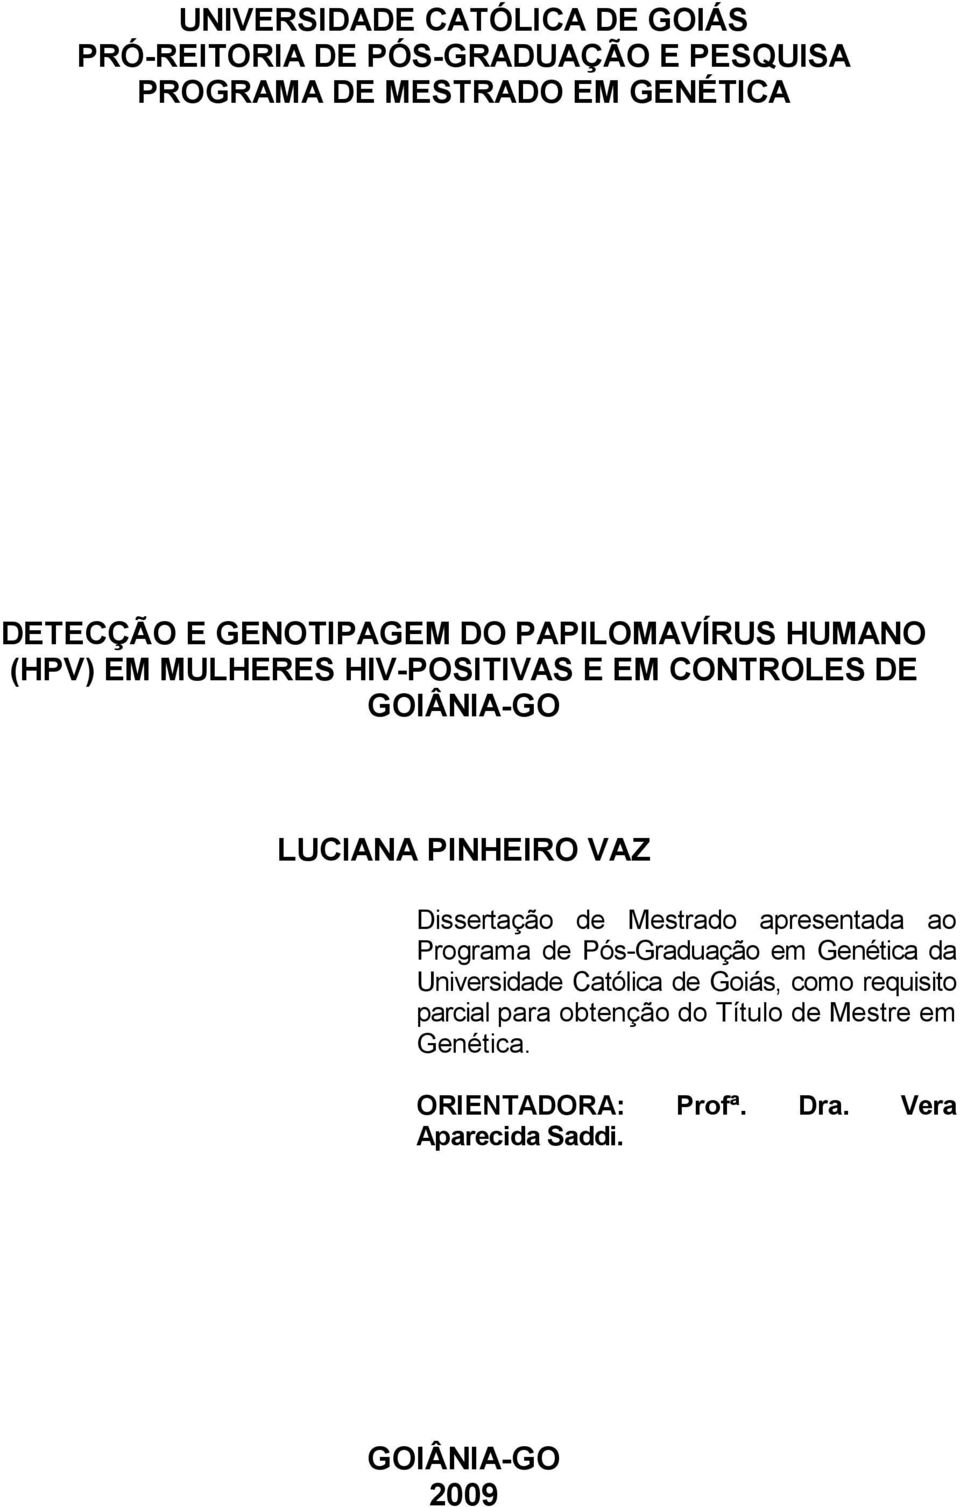 Dissertação de Mestrado apresentada ao Programa de Pós-Graduação em Genética da Universidade Católica de Goiás, como